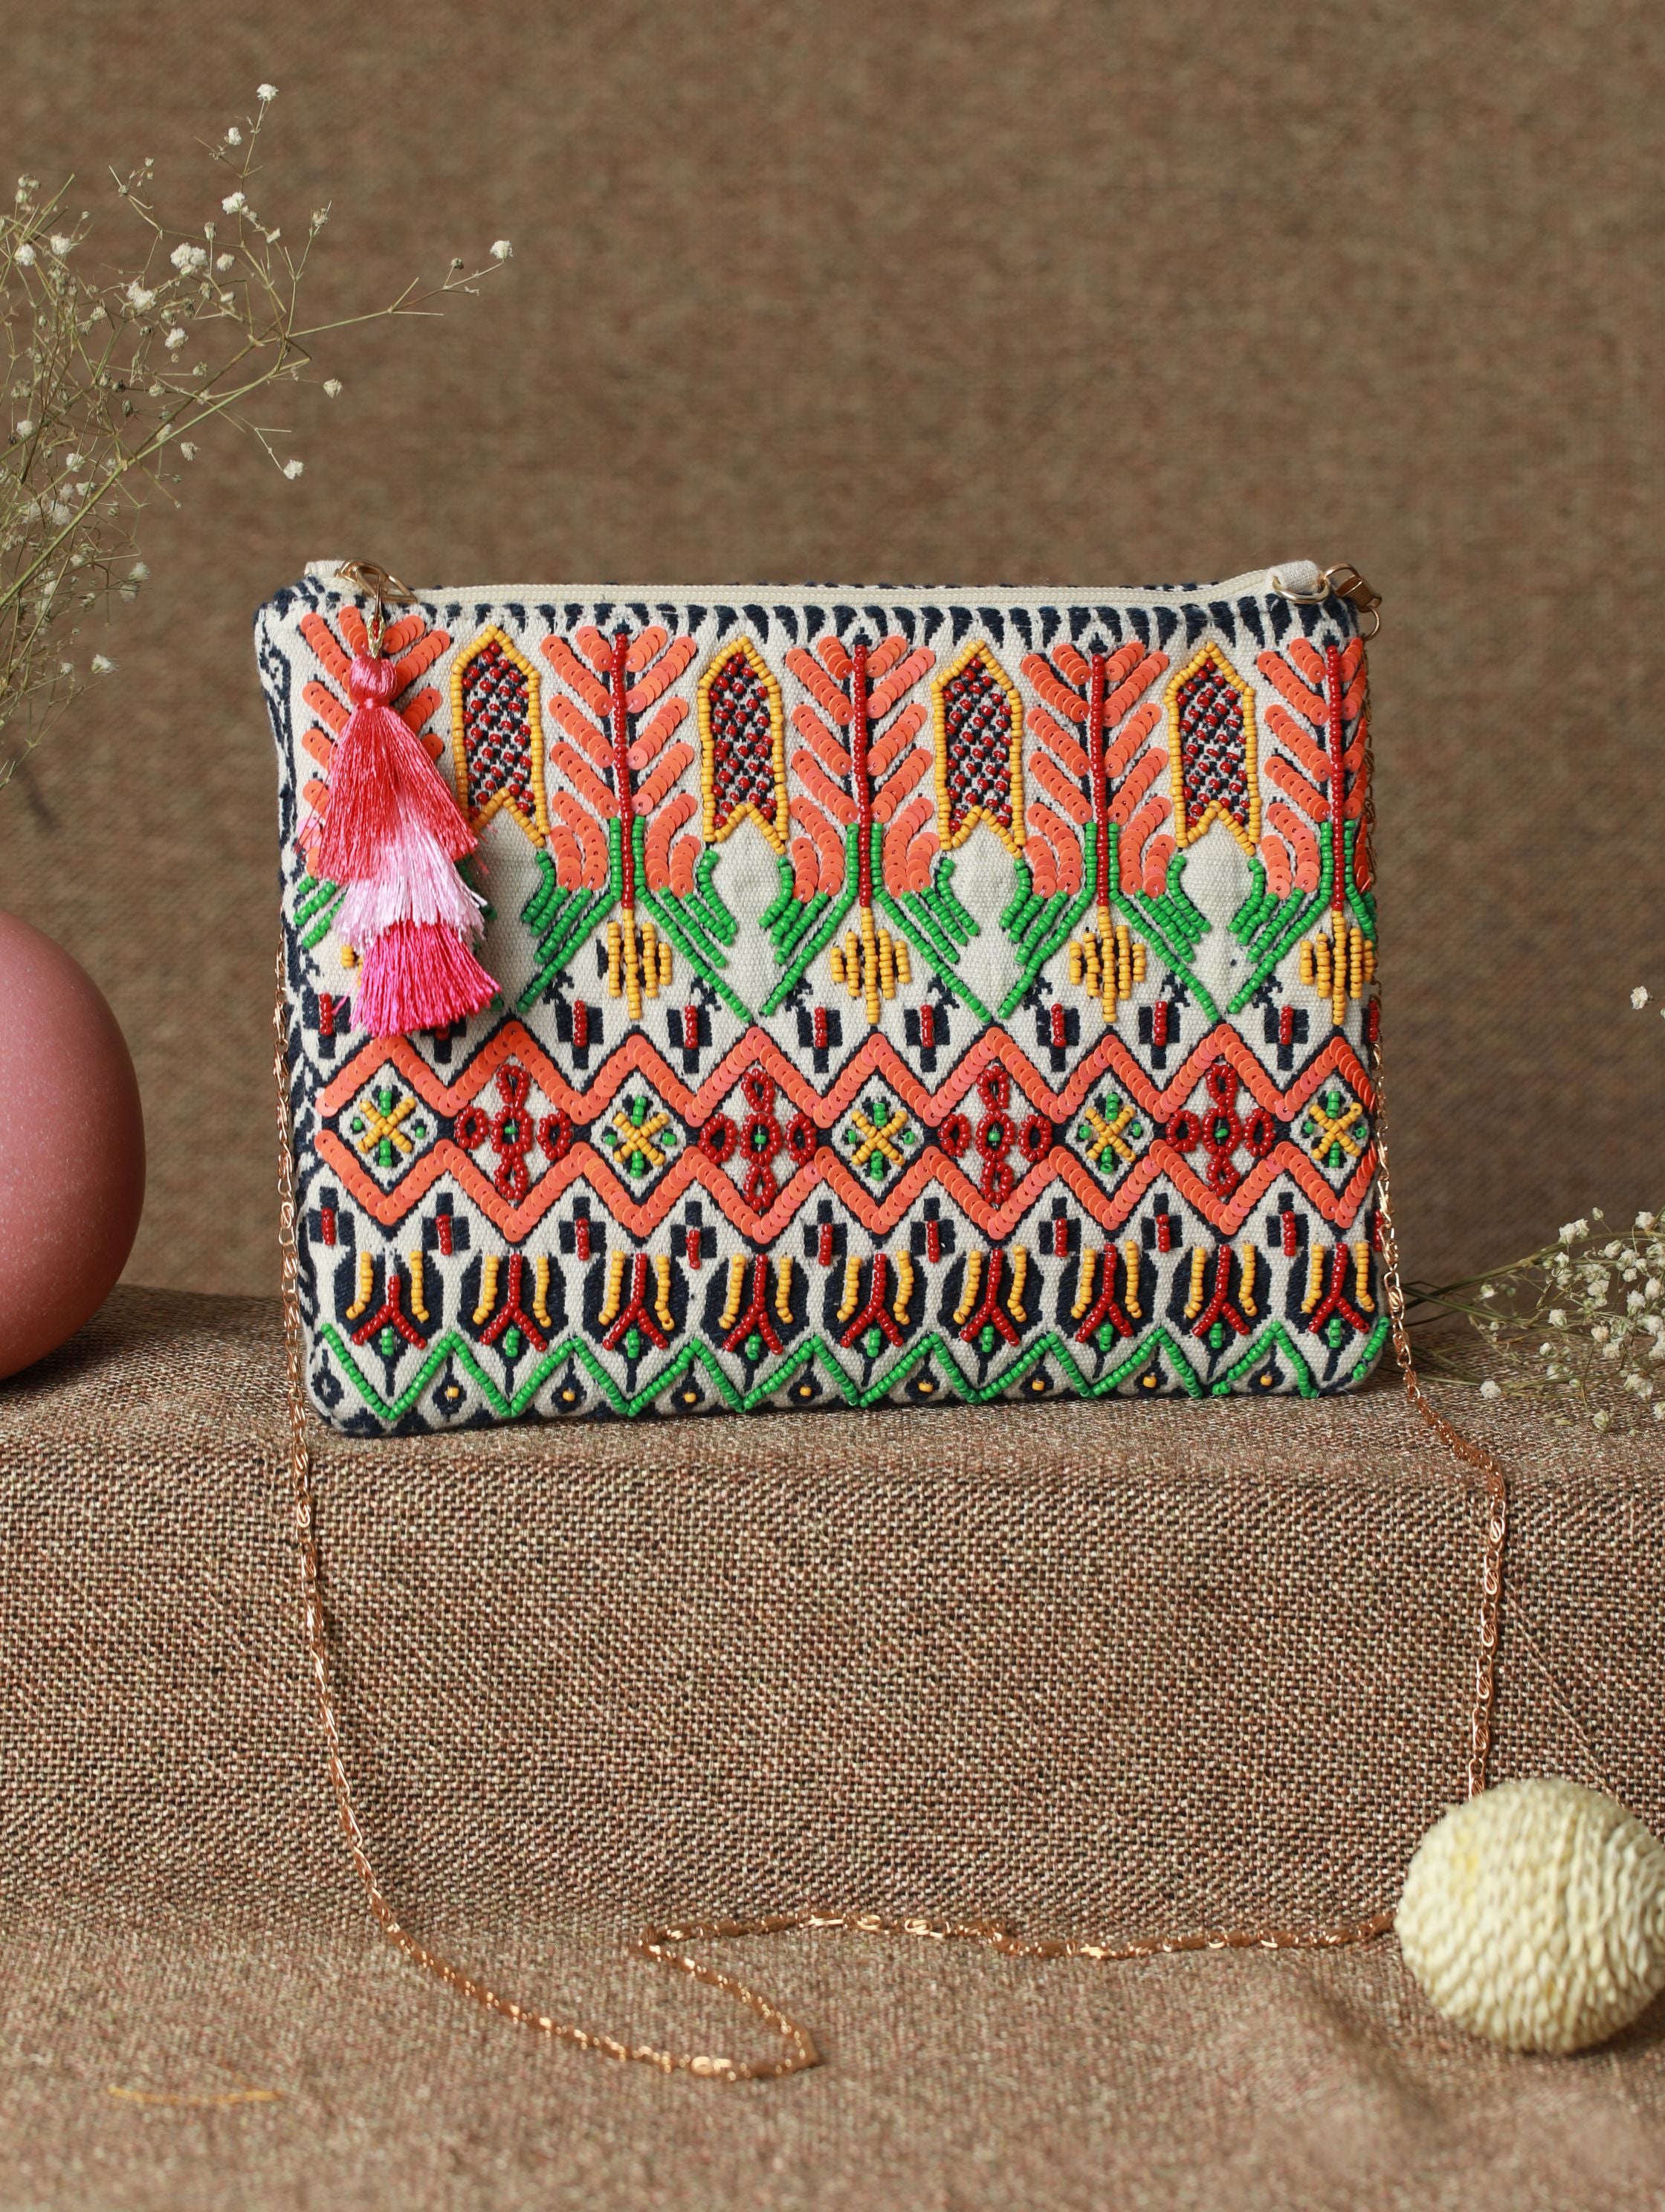 Ethnic Embroidered Handbag Tote Bag Sling Bag Shoulder Bag Banjara Bag  BA2271 | eBay